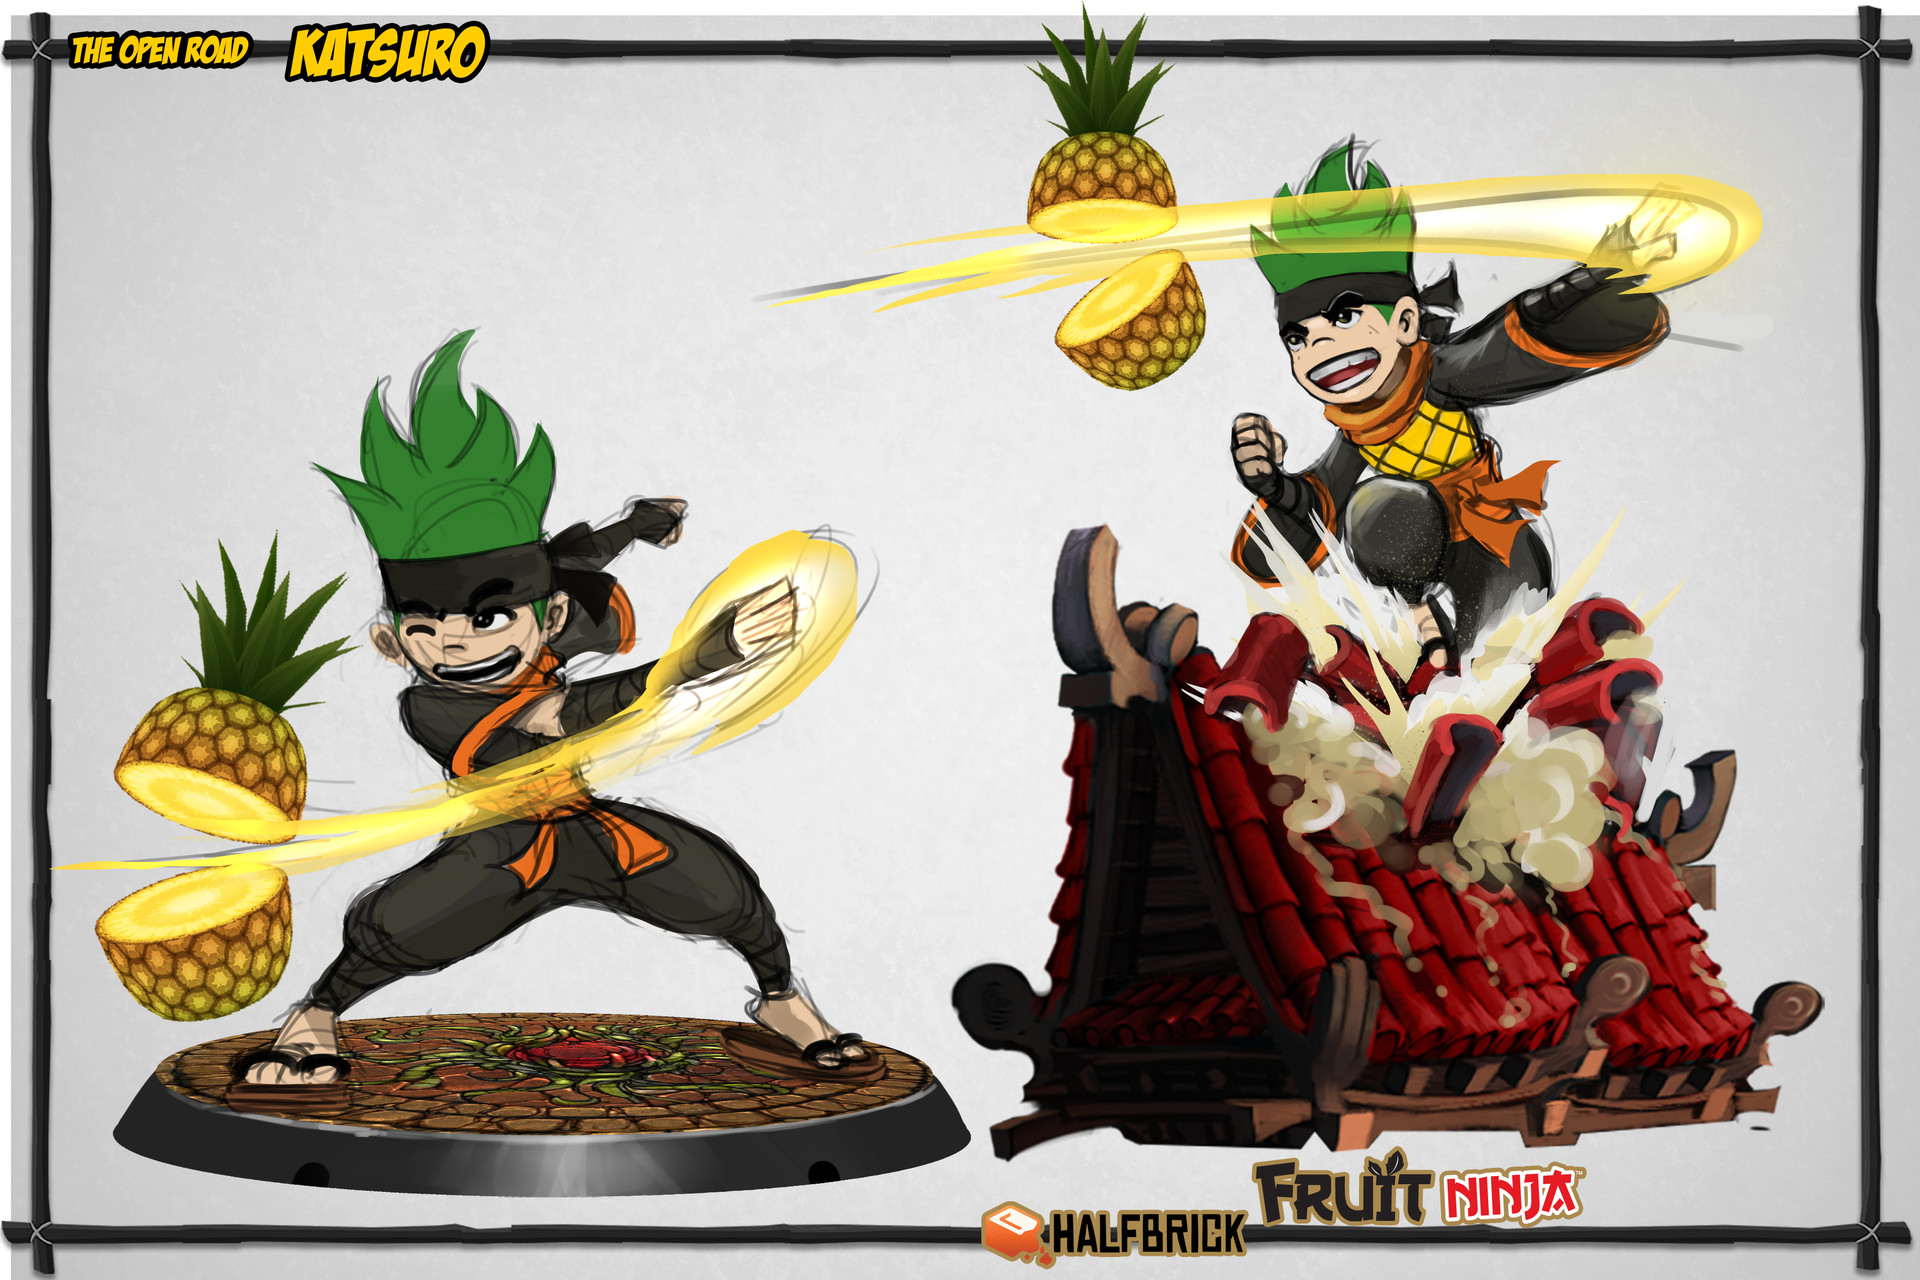 Fruit Ninja - Pick the best Katsuro! Let us know in the comment! #Fruitninja  #Fruitninja2 #halfbrick